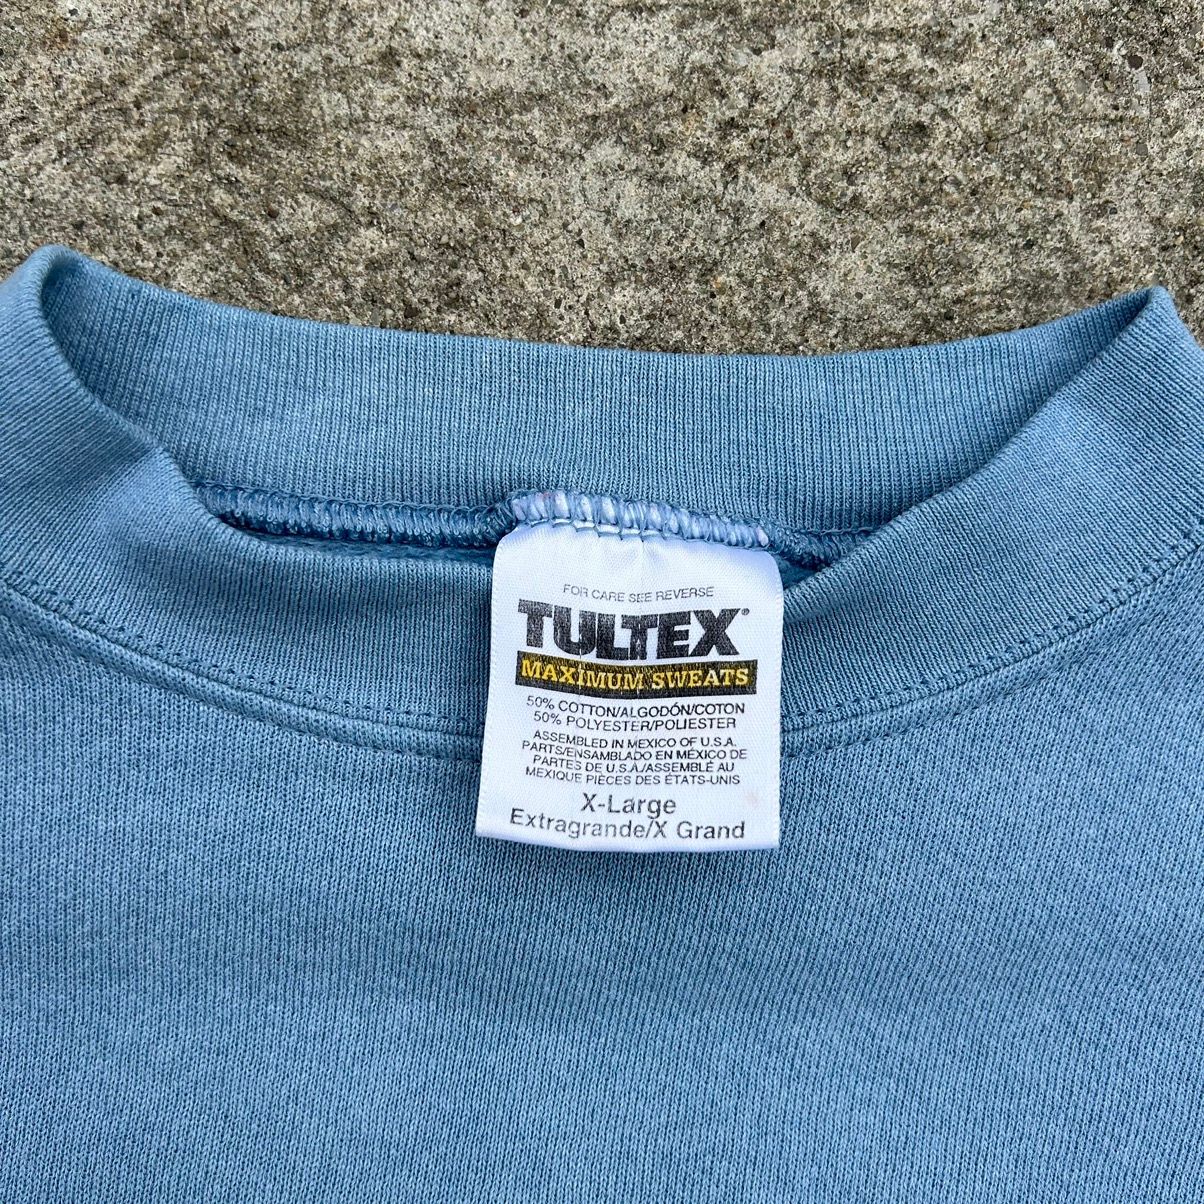 Vintage Vintage Tultex Crewneck Sweatshirt Blue Size XL Size US XL / EU 56 / 4 - 3 Thumbnail